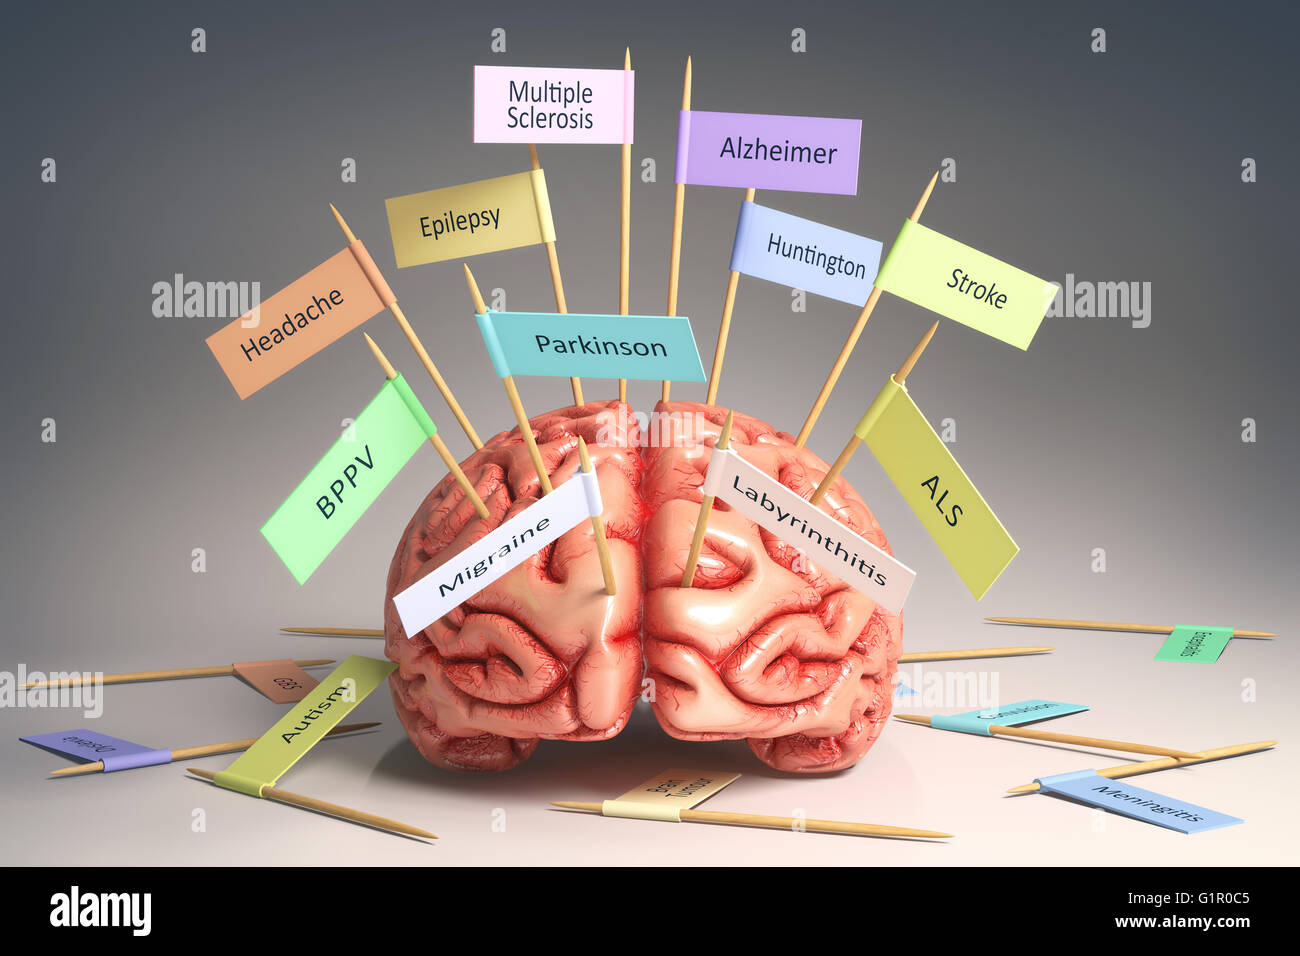 Immagine di un cervello sulla tavola con varie targhette di varie malattie che possono influenzare il nostro cervello. Si tratta di una immagine 3D con namepl Foto Stock